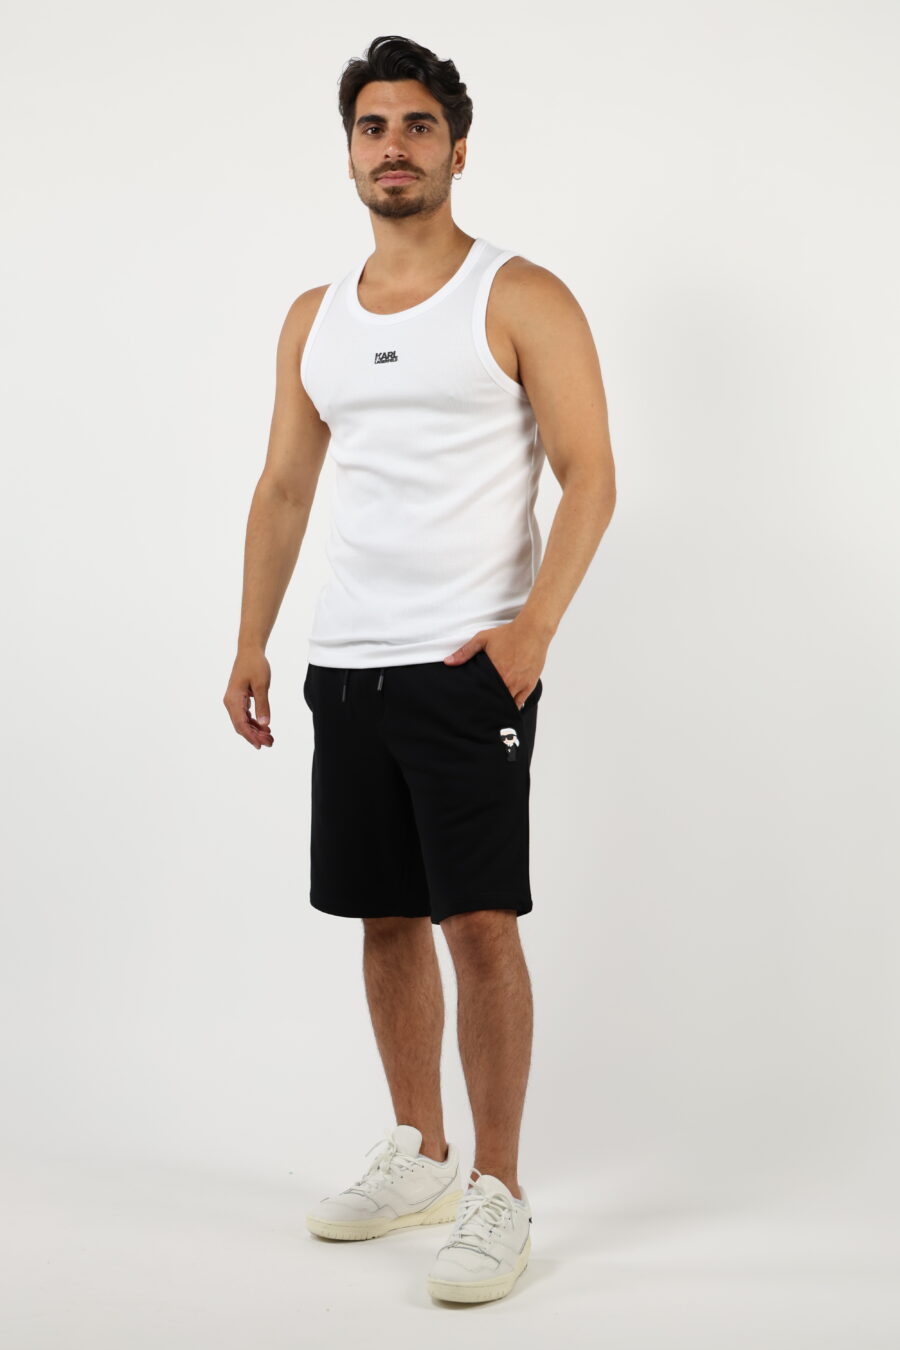 Camiseta blanca sin mangas con minilogo centrado - 4062226958257 1